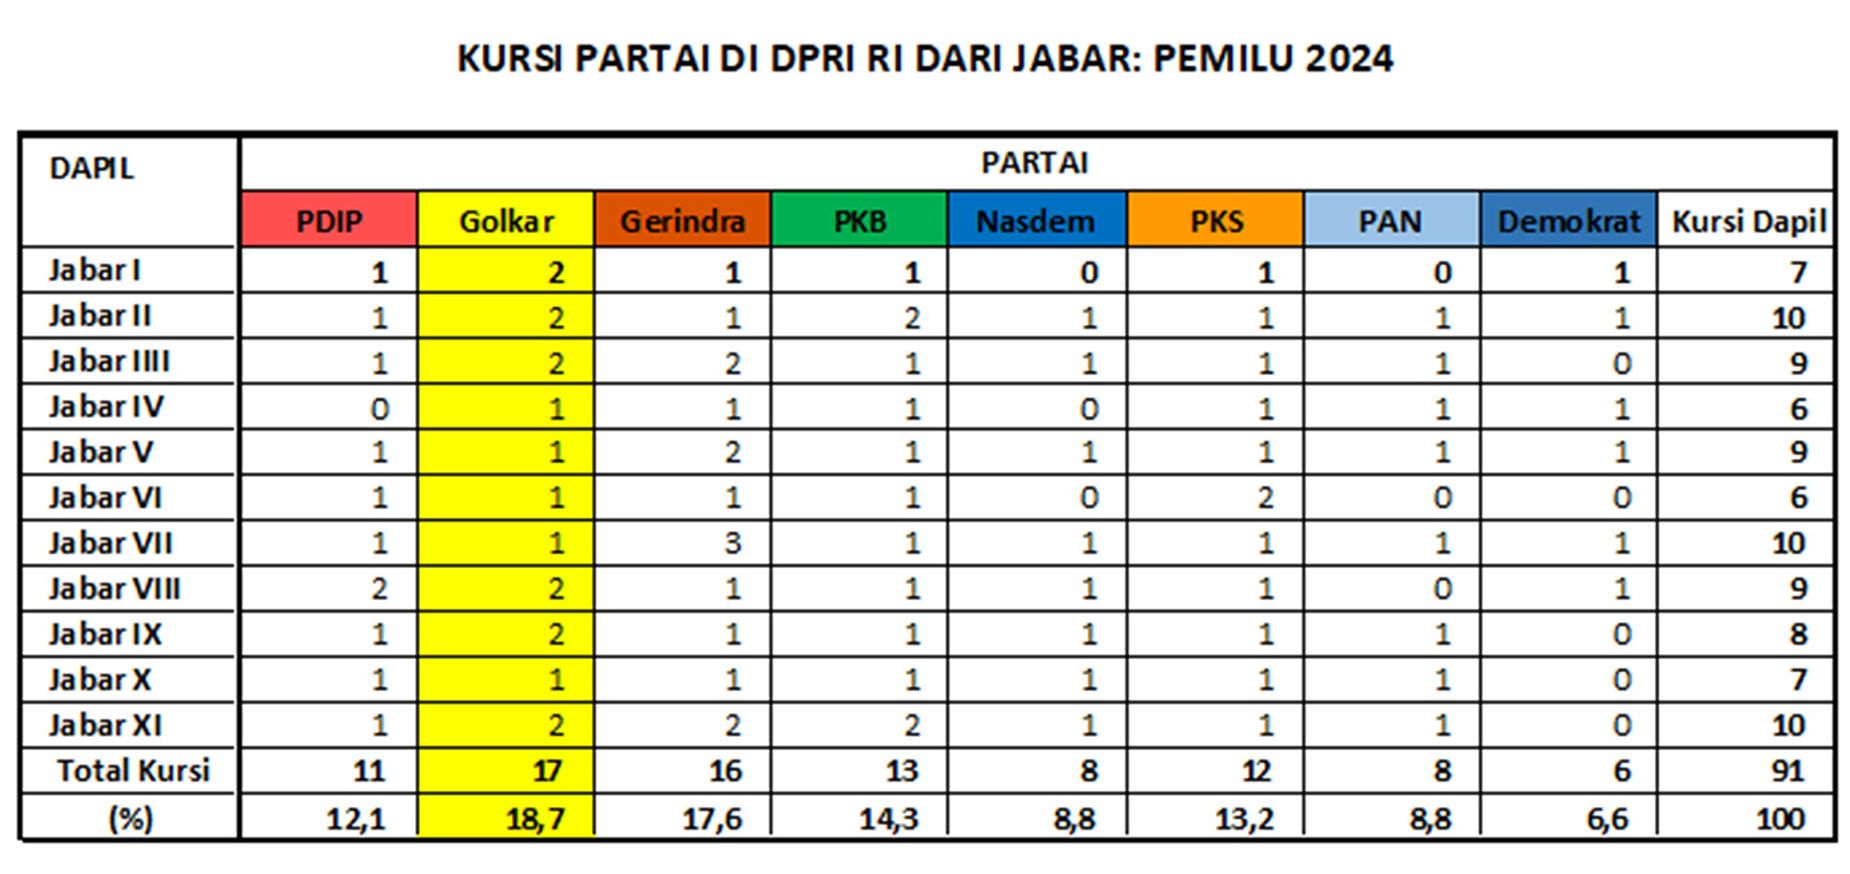 Kursi Gerindra di Jabar dari 11 Dapil: 16 kursi di posisi kedua.  